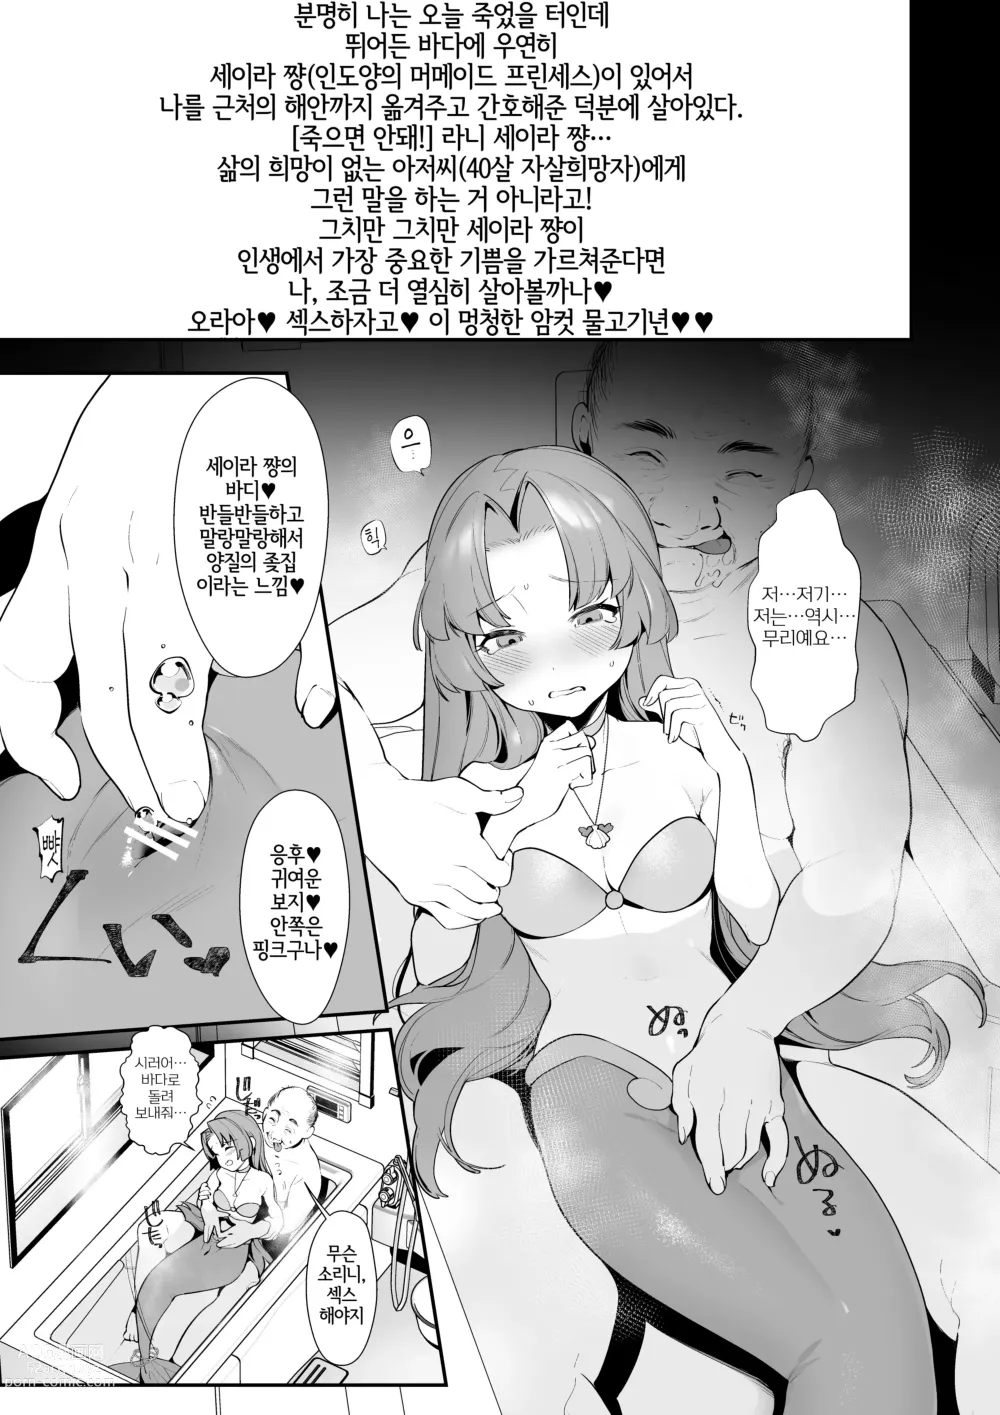 Page 3 of doujinshi 세이라 쨩의 화원을 짓밟아버리자!!